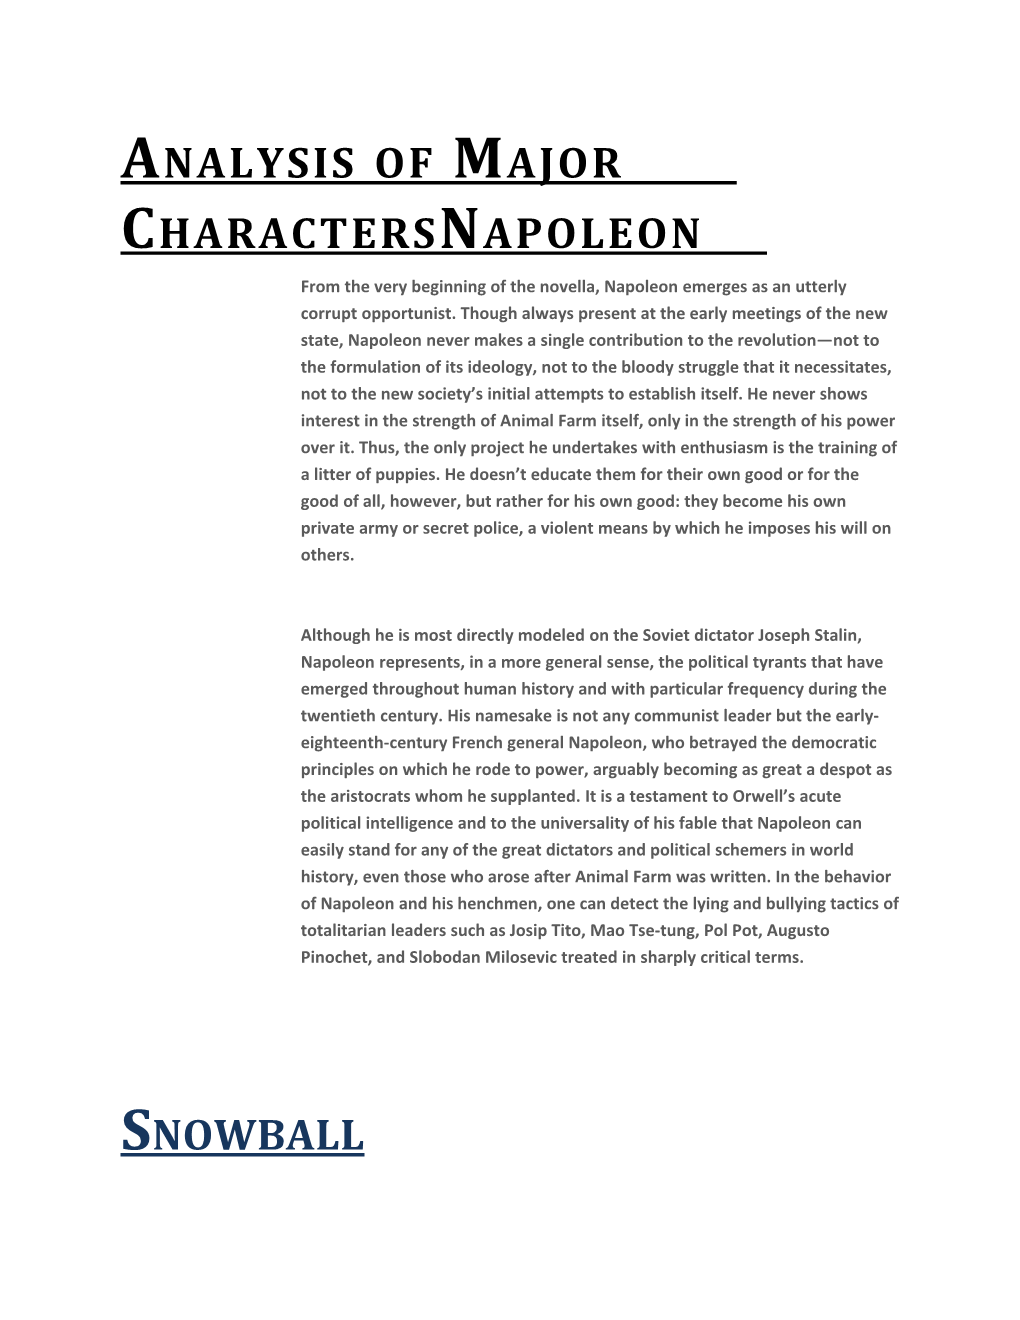 Analysis of Major Charactersnapoleon